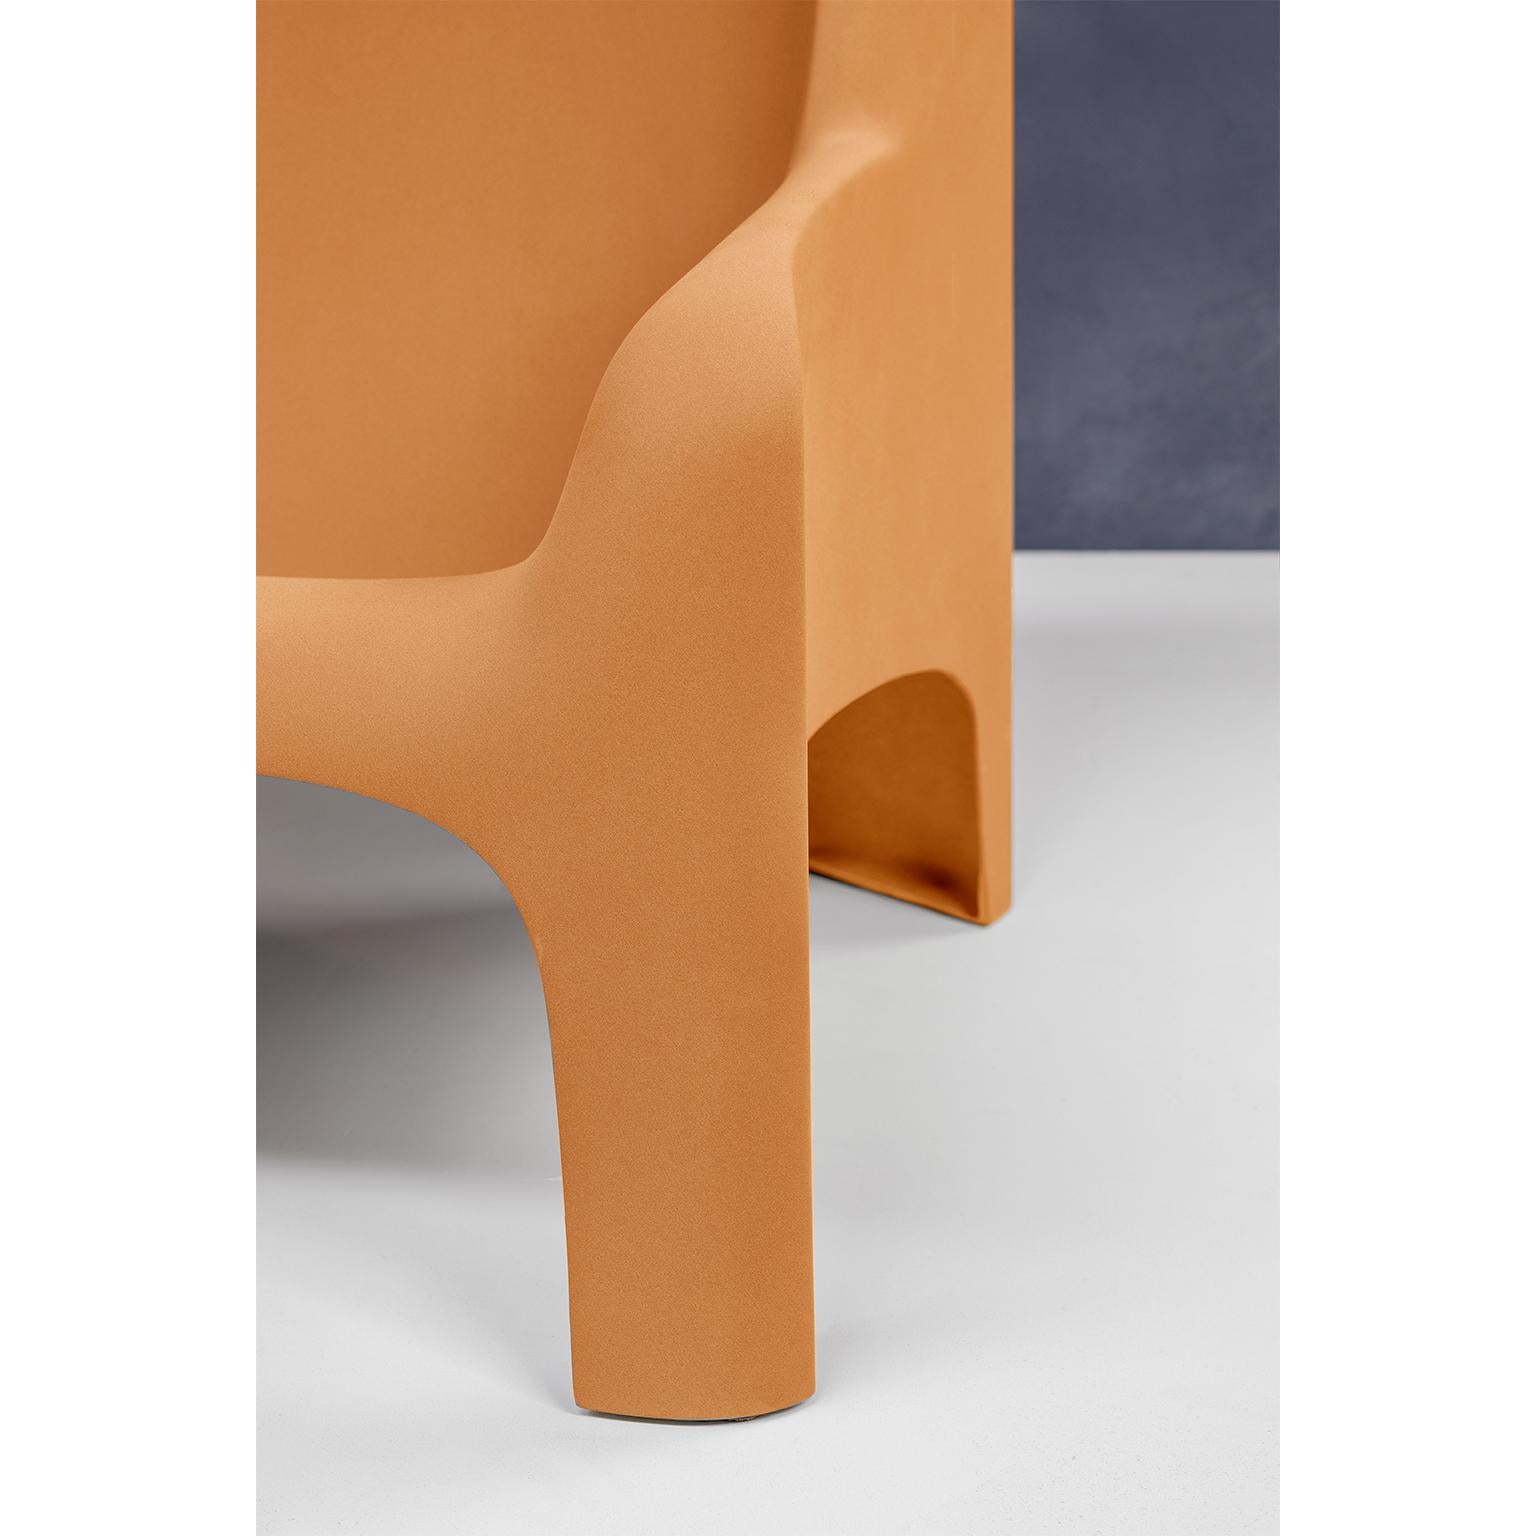 Italian Gaia Armchair by Arflex Designer Bartoli Trasformed by Draga&Aurel Fiberglass